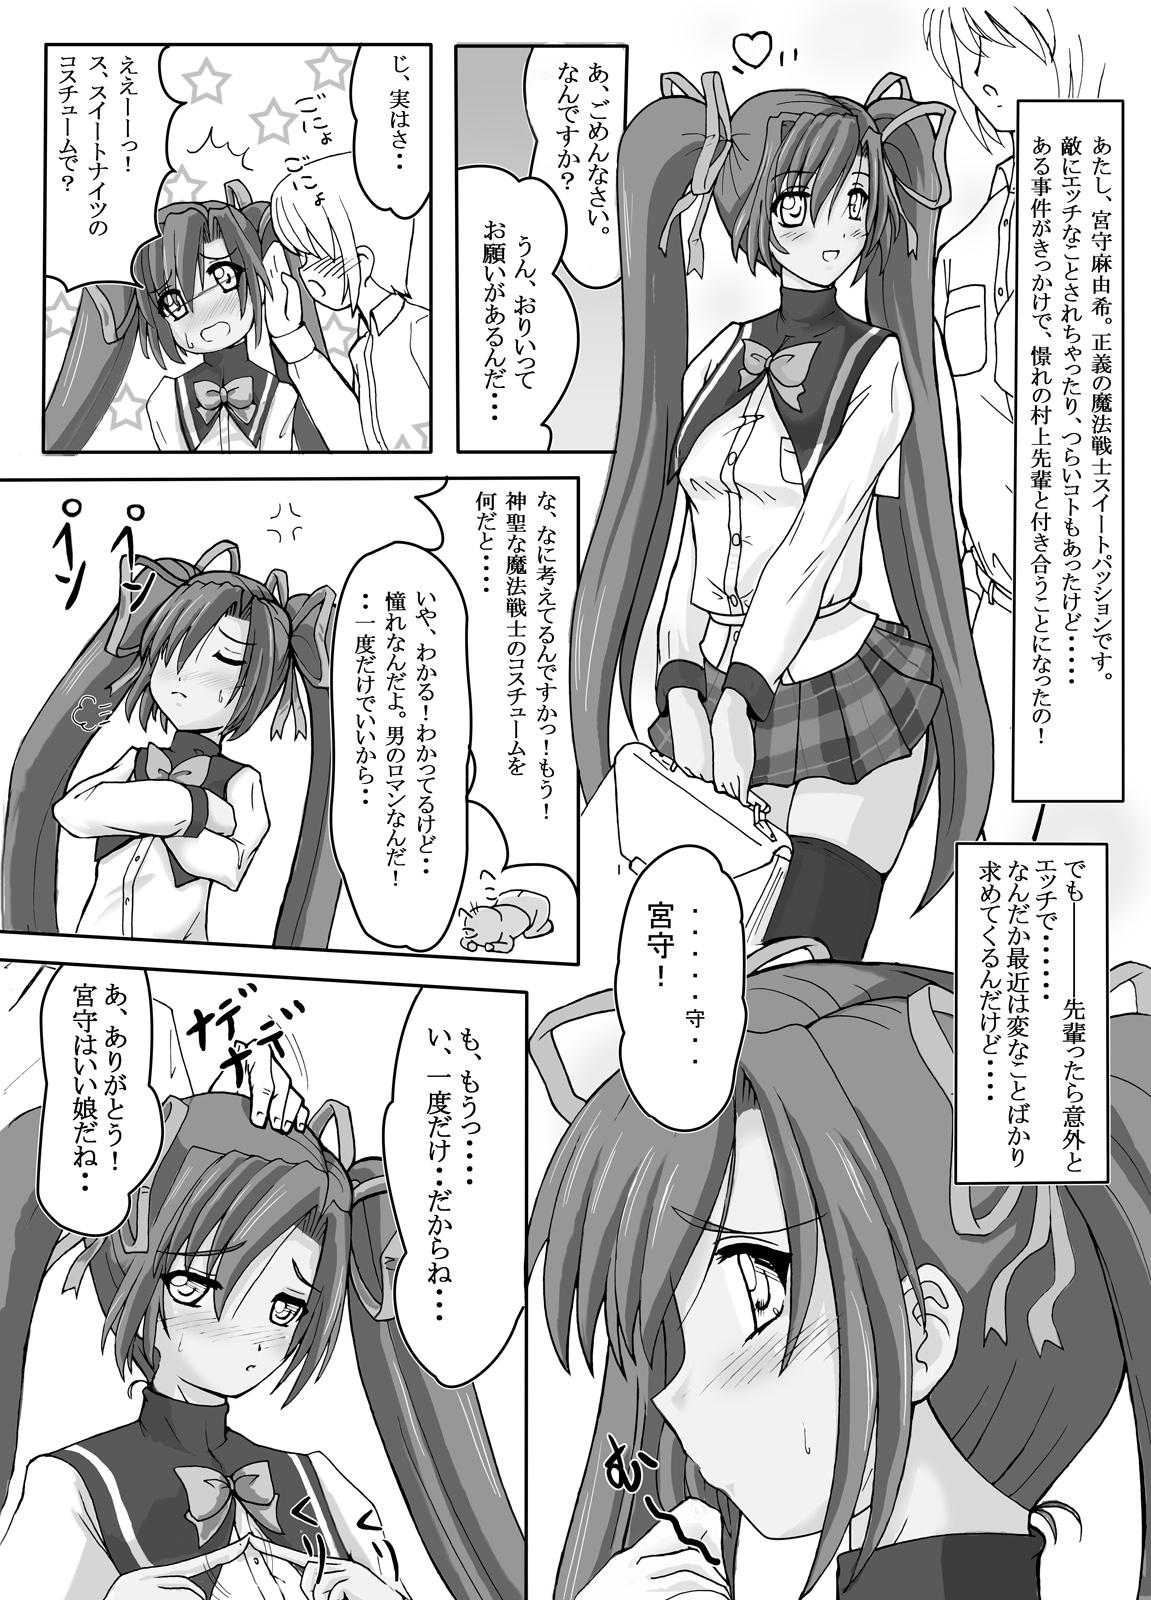 Furry SWEETSPOT!3 - Mahou senshi sweet knights Young Tits - Page 5